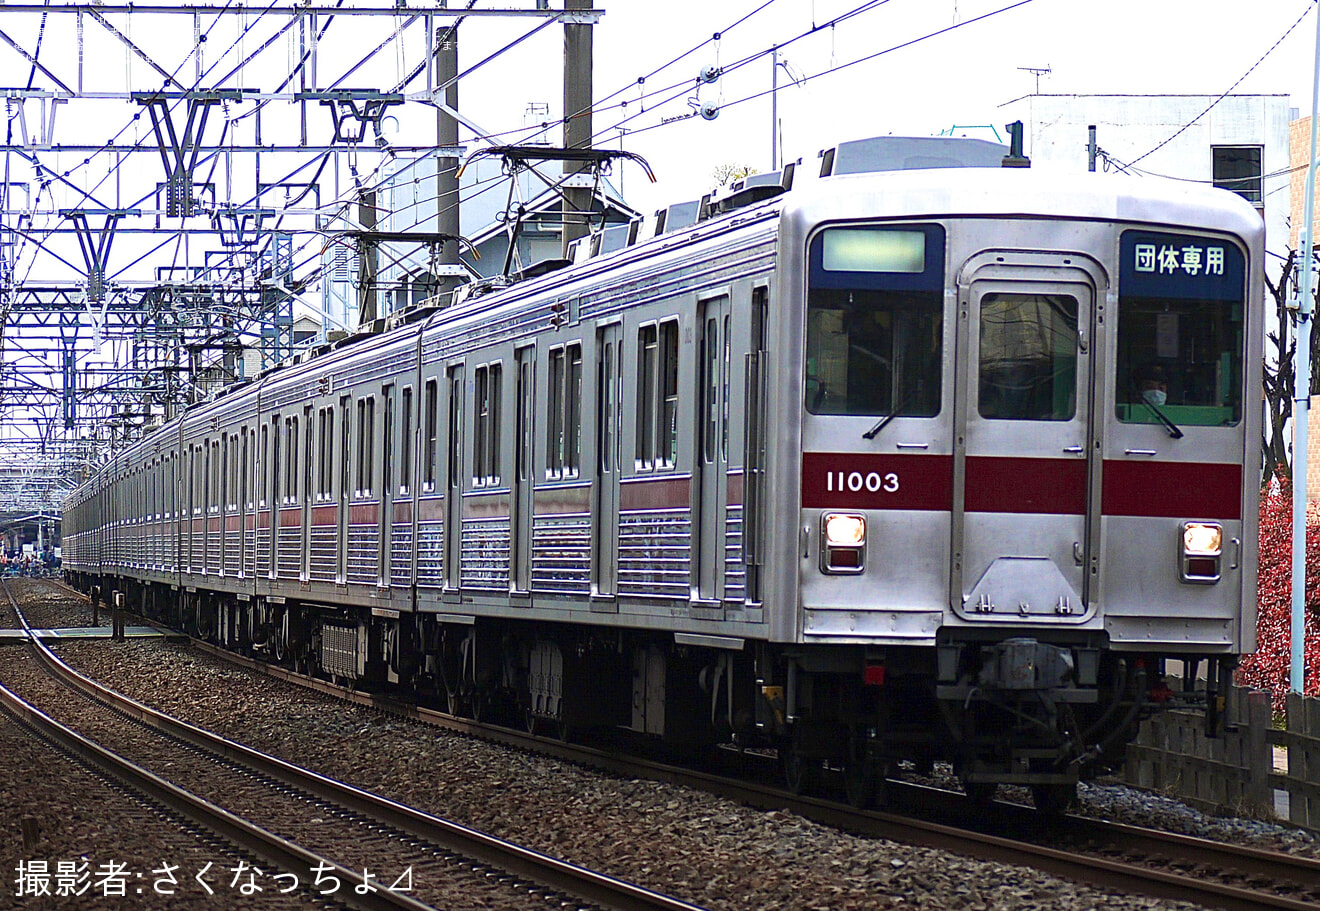 【東武】10000系11003F 団体専用列車の拡大写真